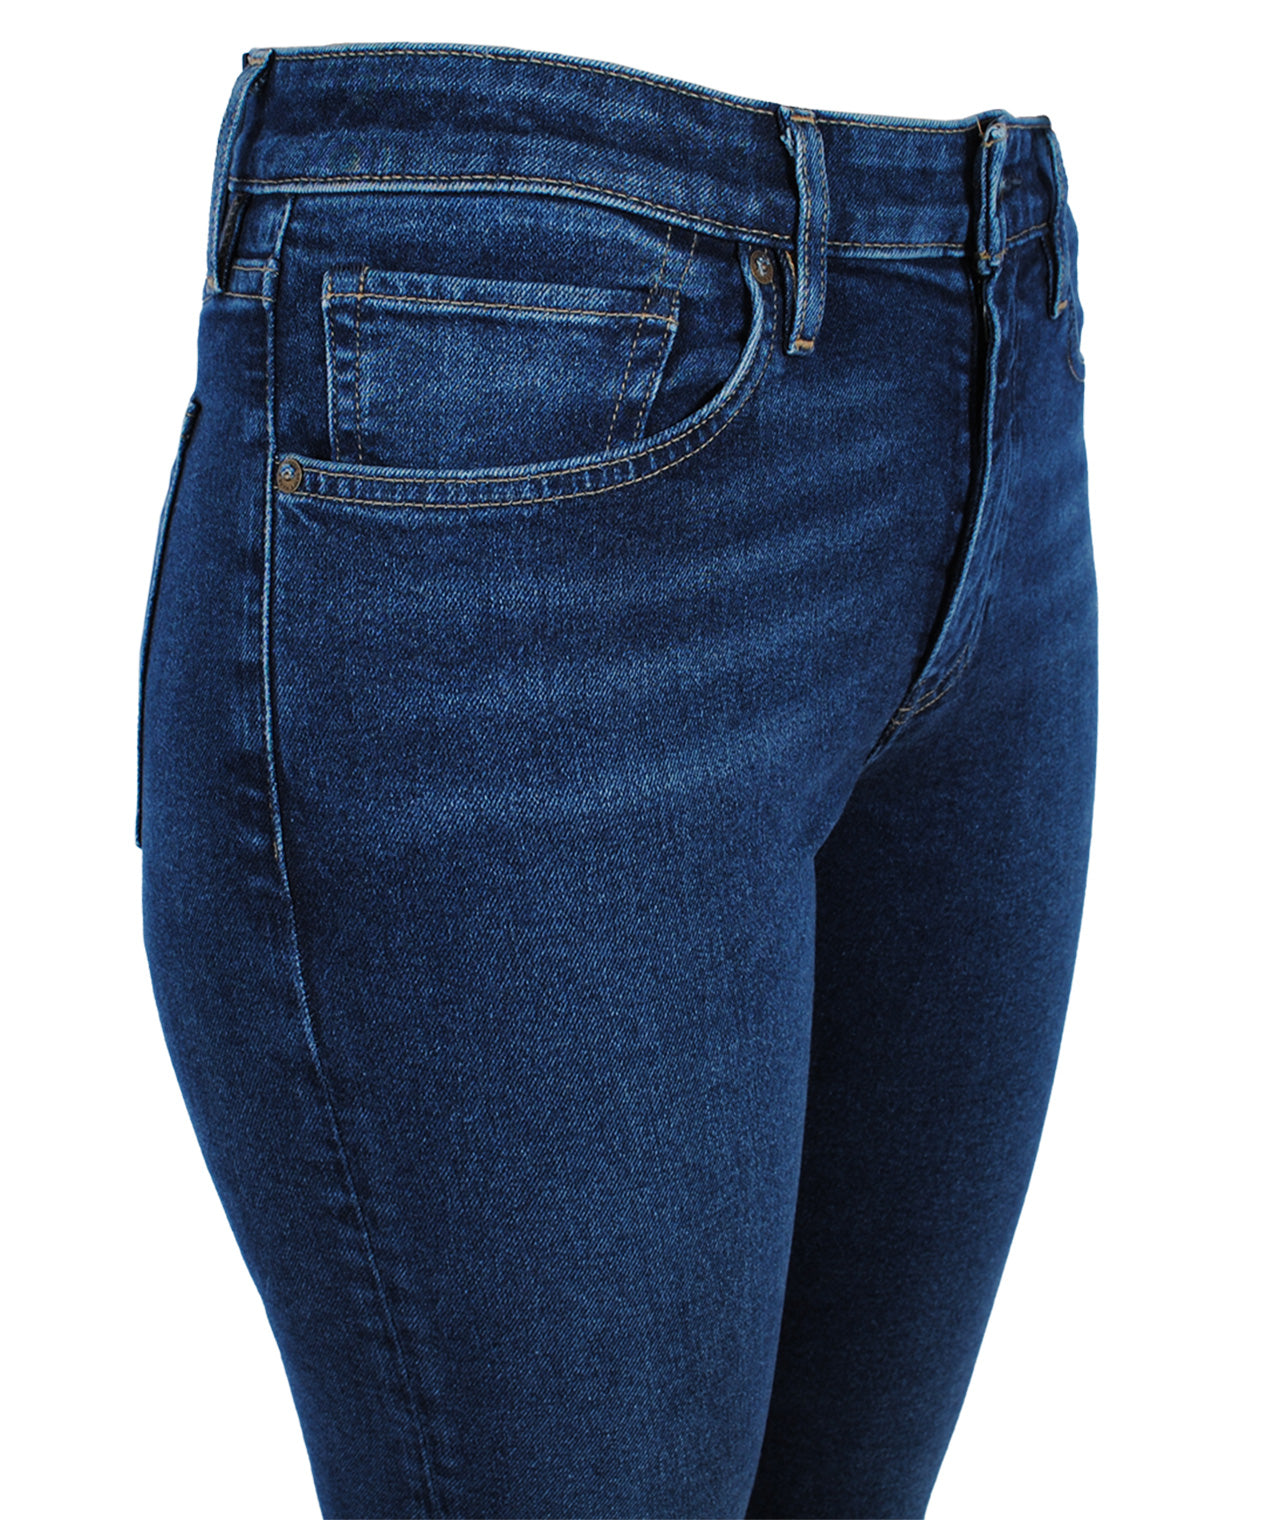 Jeans Skinny 721 | denim